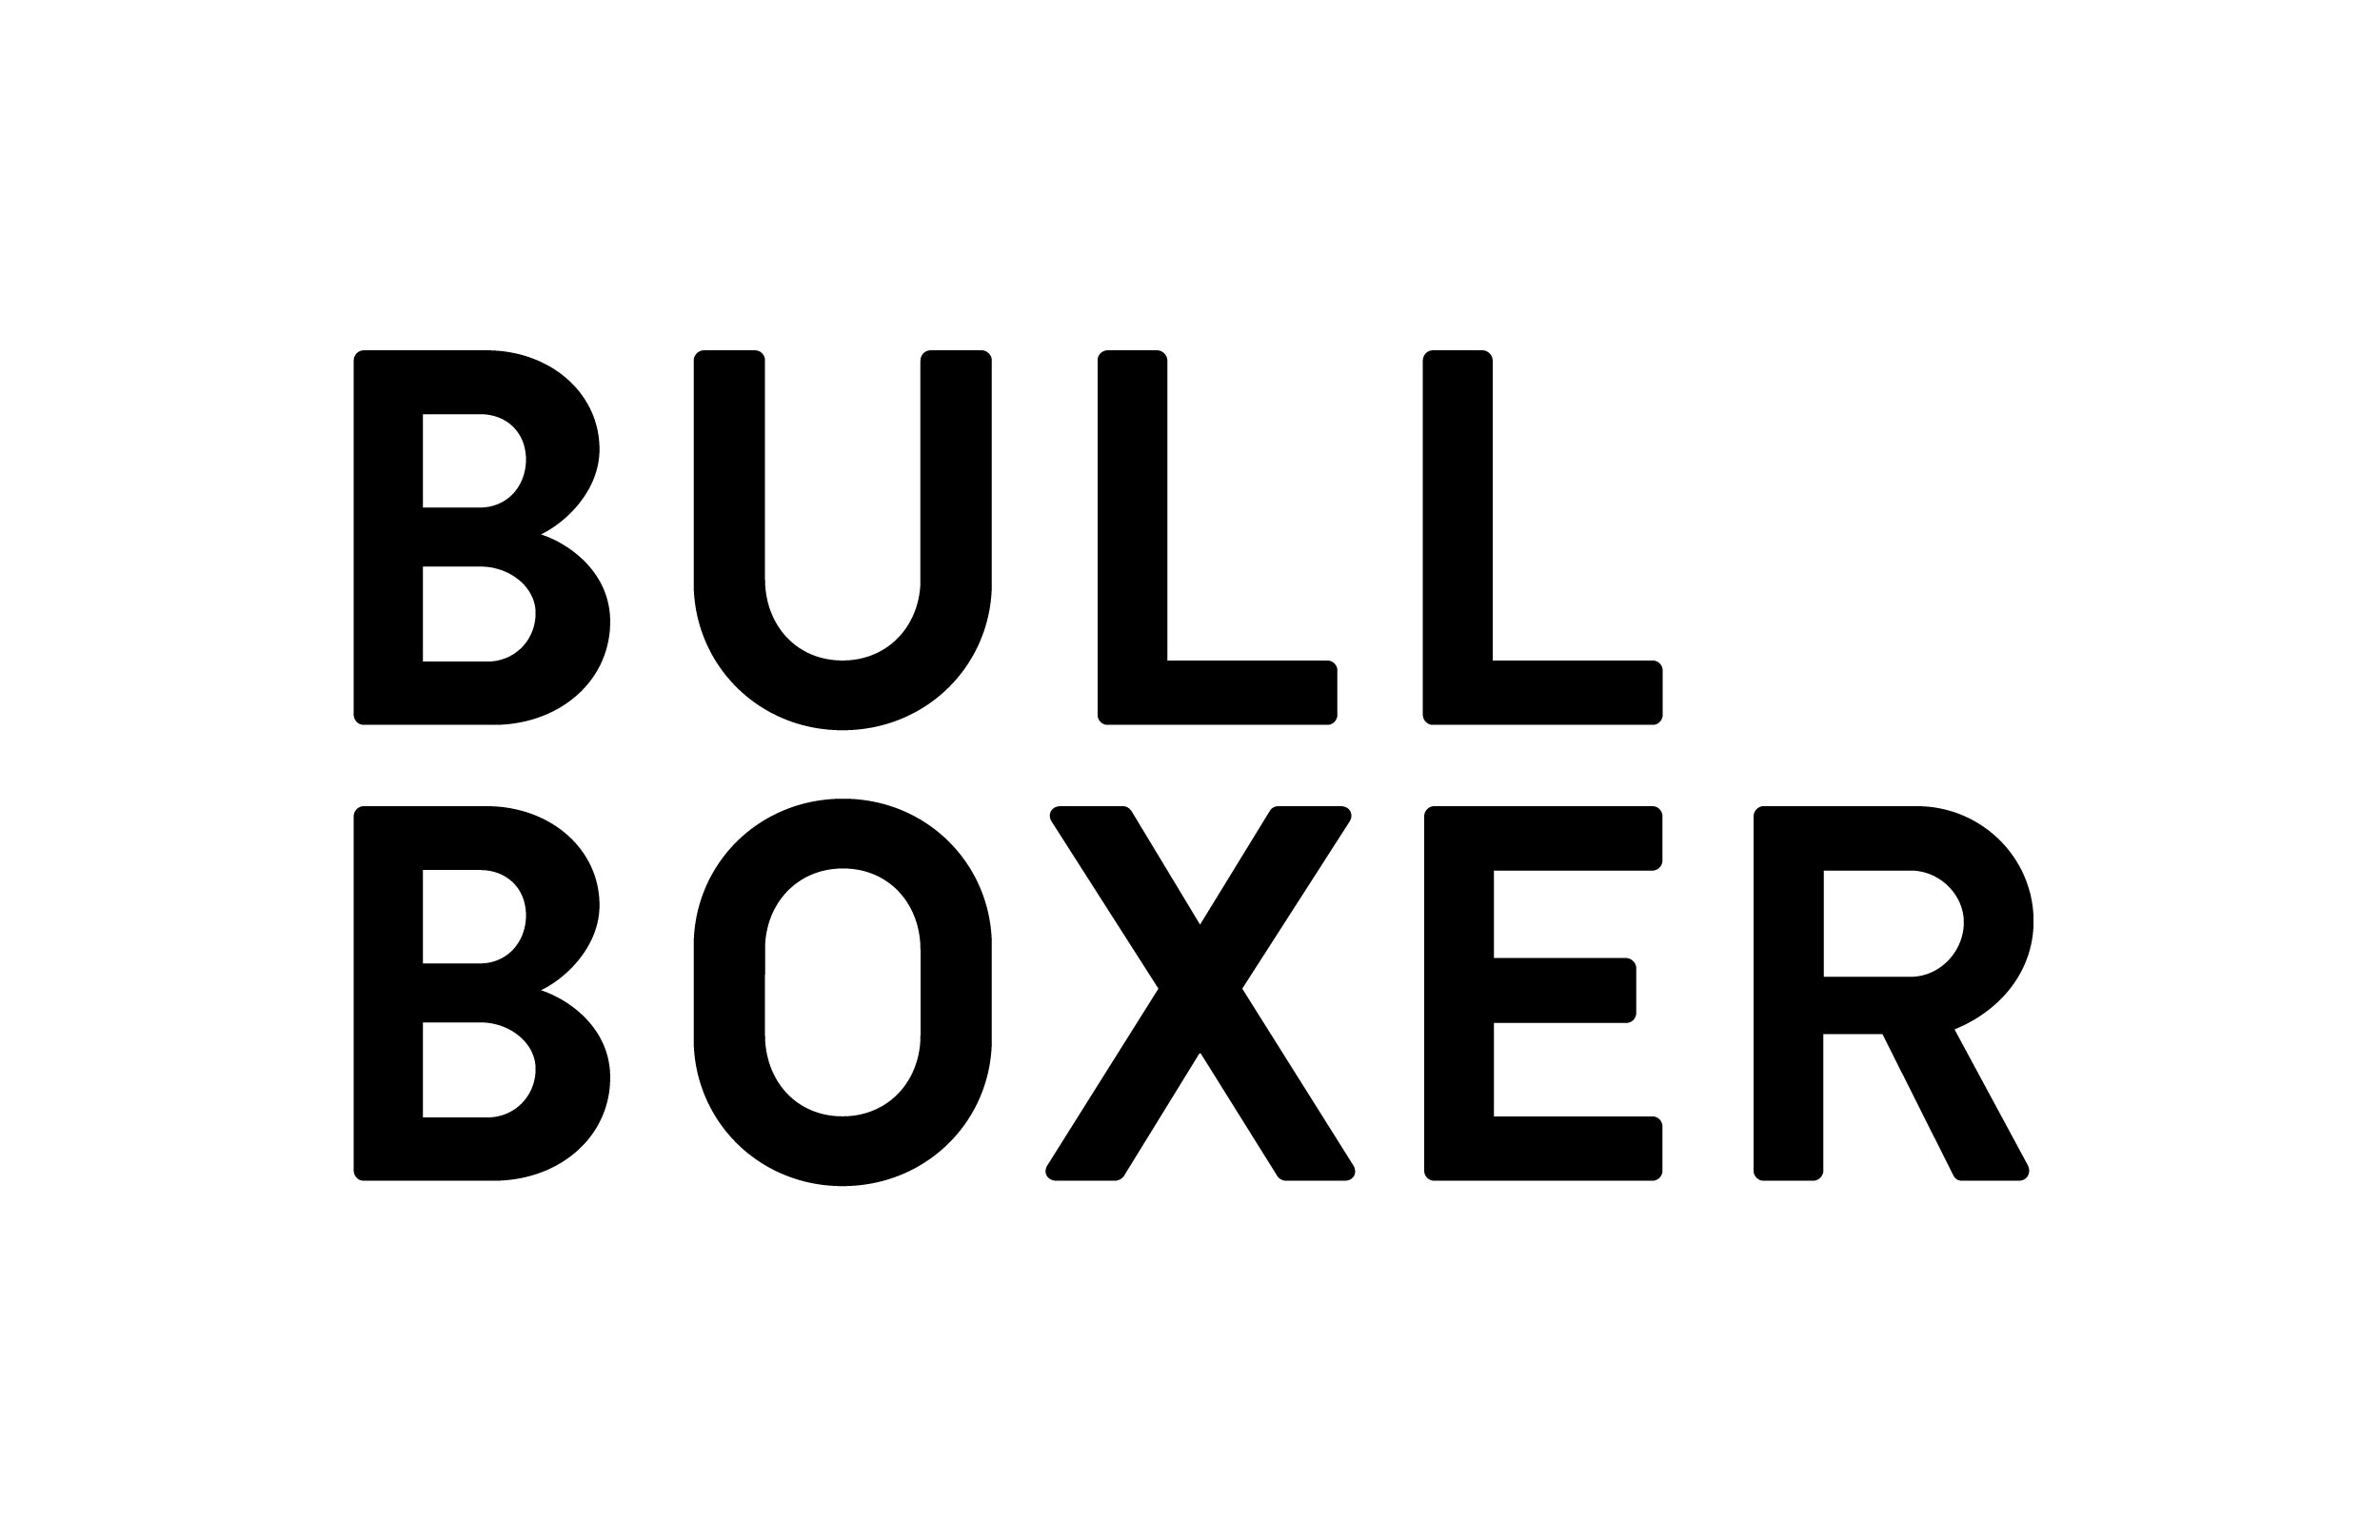 Bull Boxer